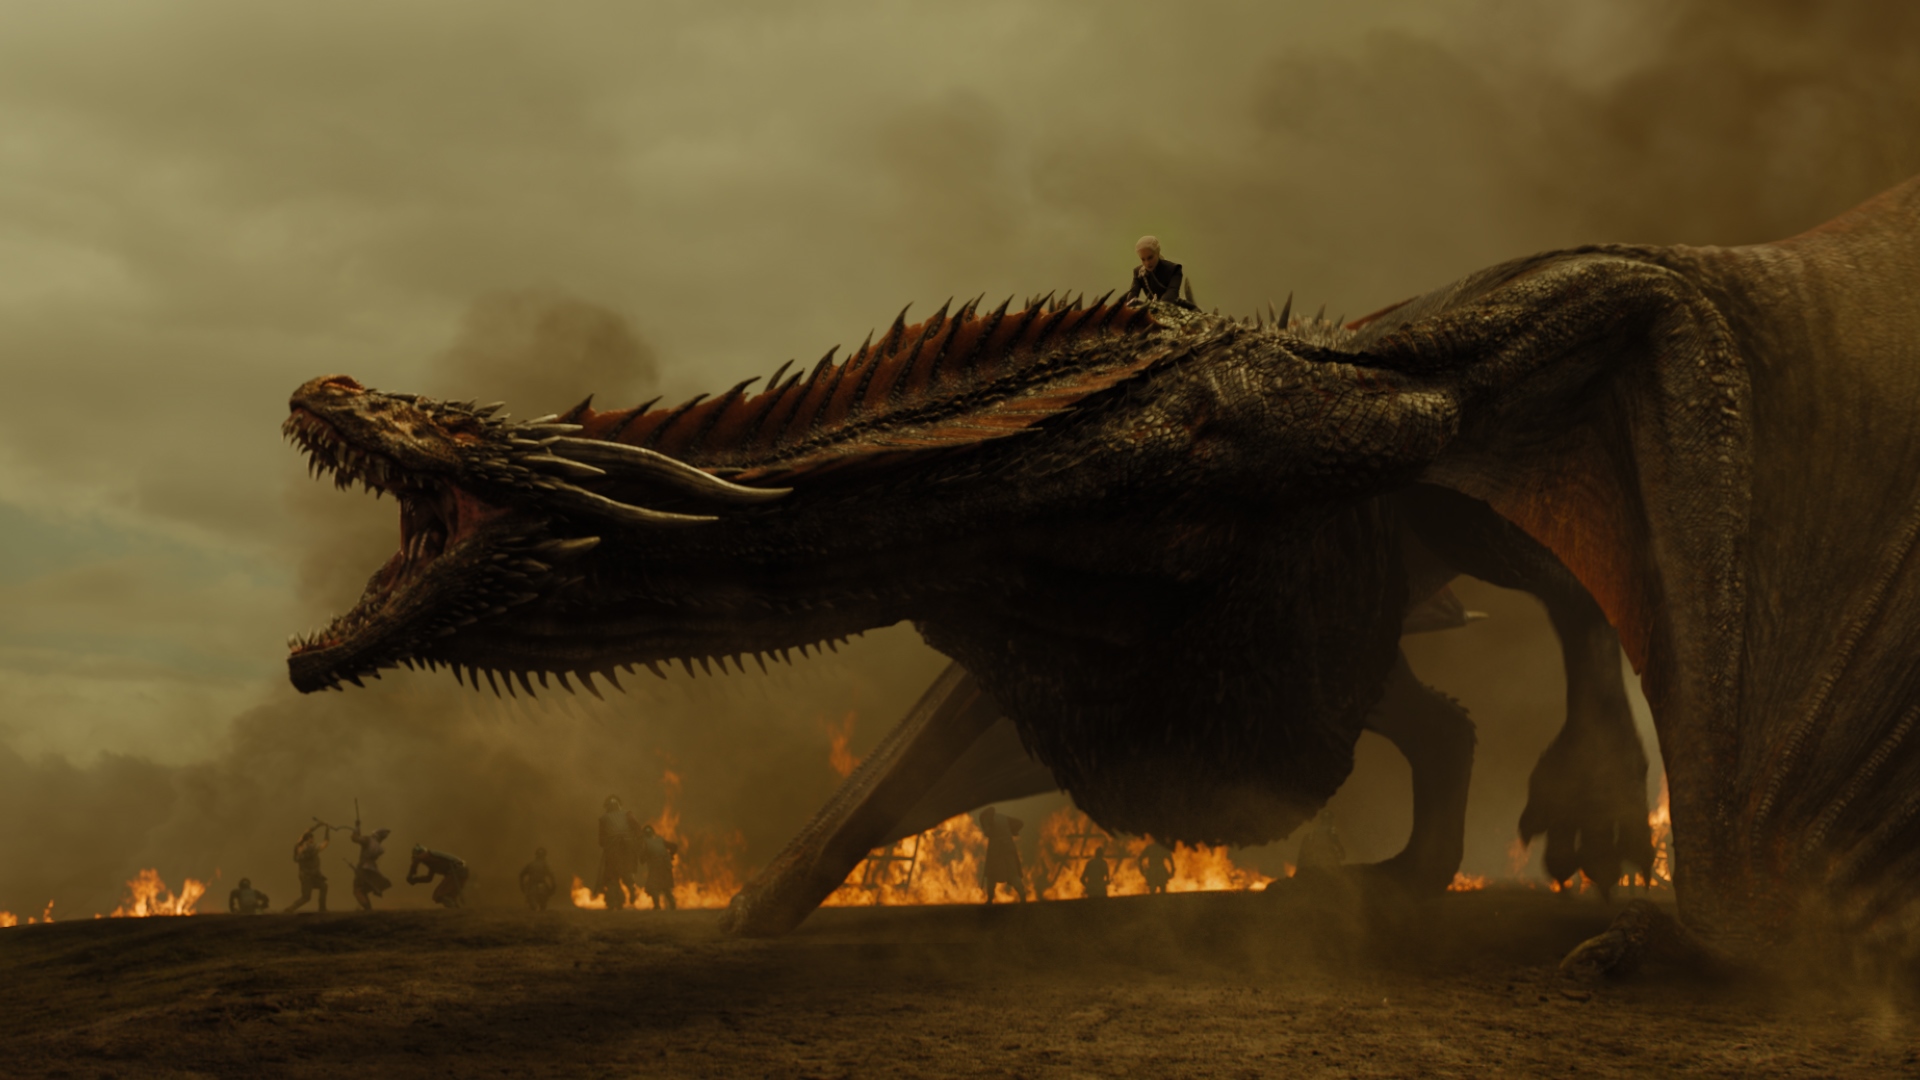 House of the Dragon, derivada de Game of Thrones, começa a ser produzida